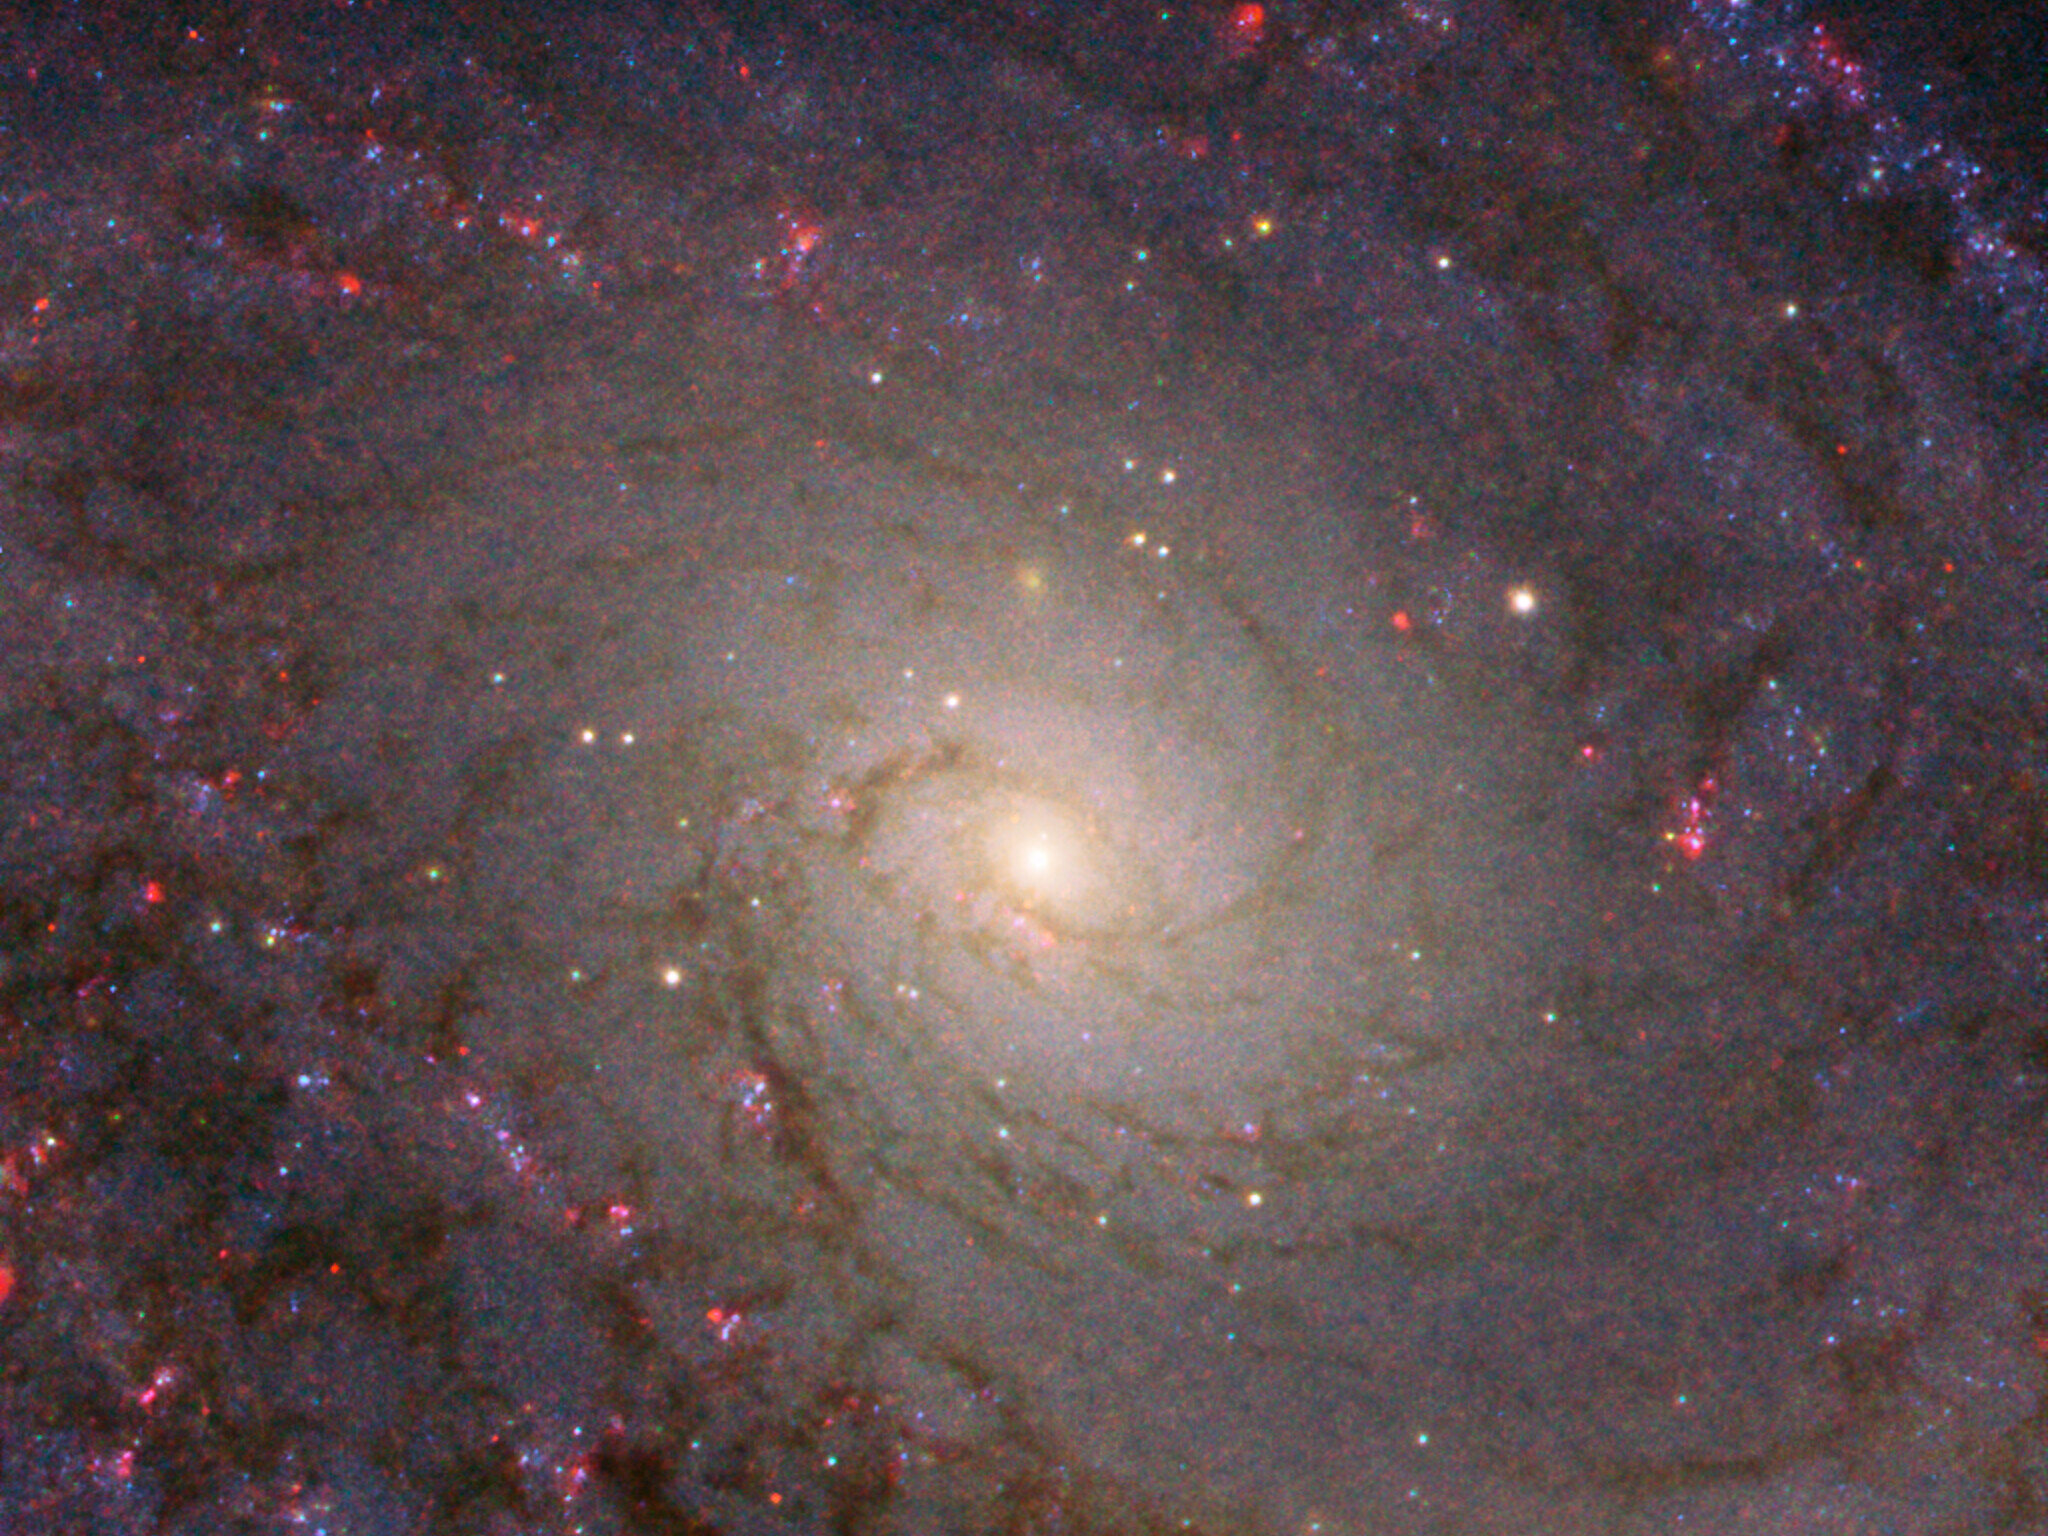 Фото сделано наса в день рождения. Галактика m101 вертушка. Галактика м101 булавочное колесо. Спиральная Галактика m106. NGC 1566 (Галактика испанский танцор).